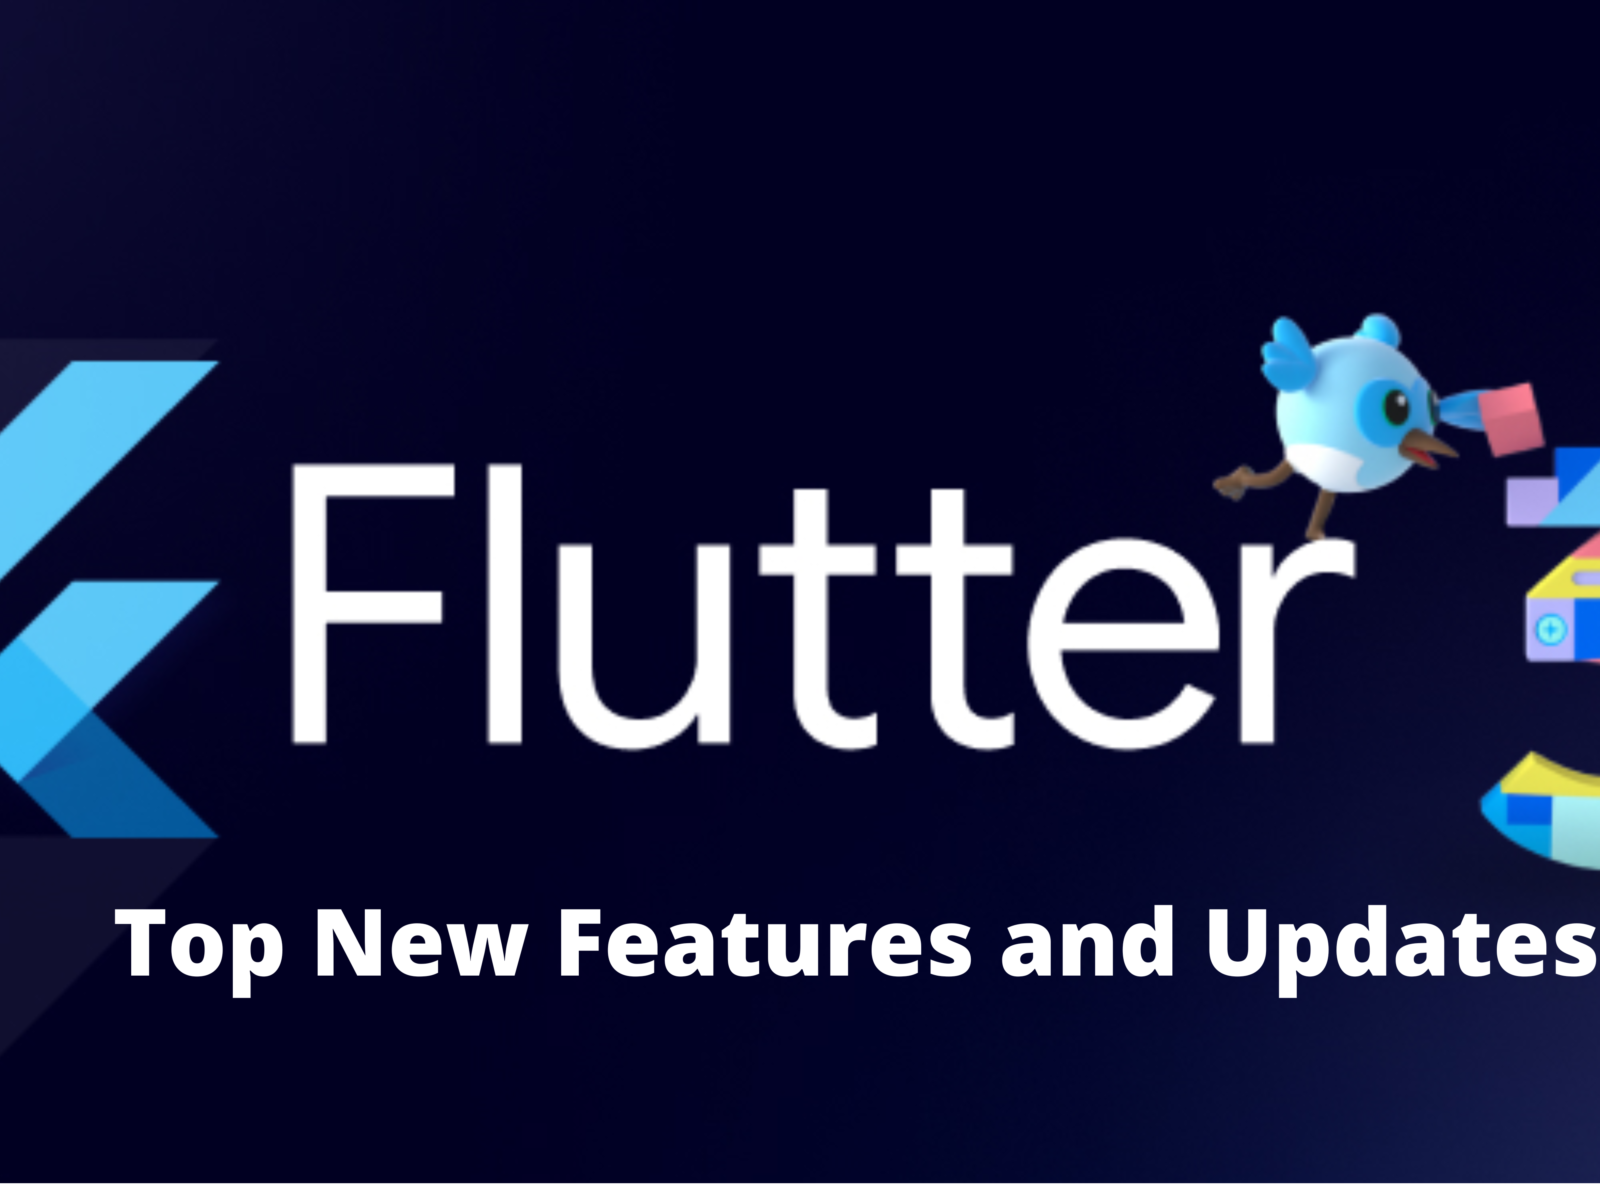 Flutter 3 Release